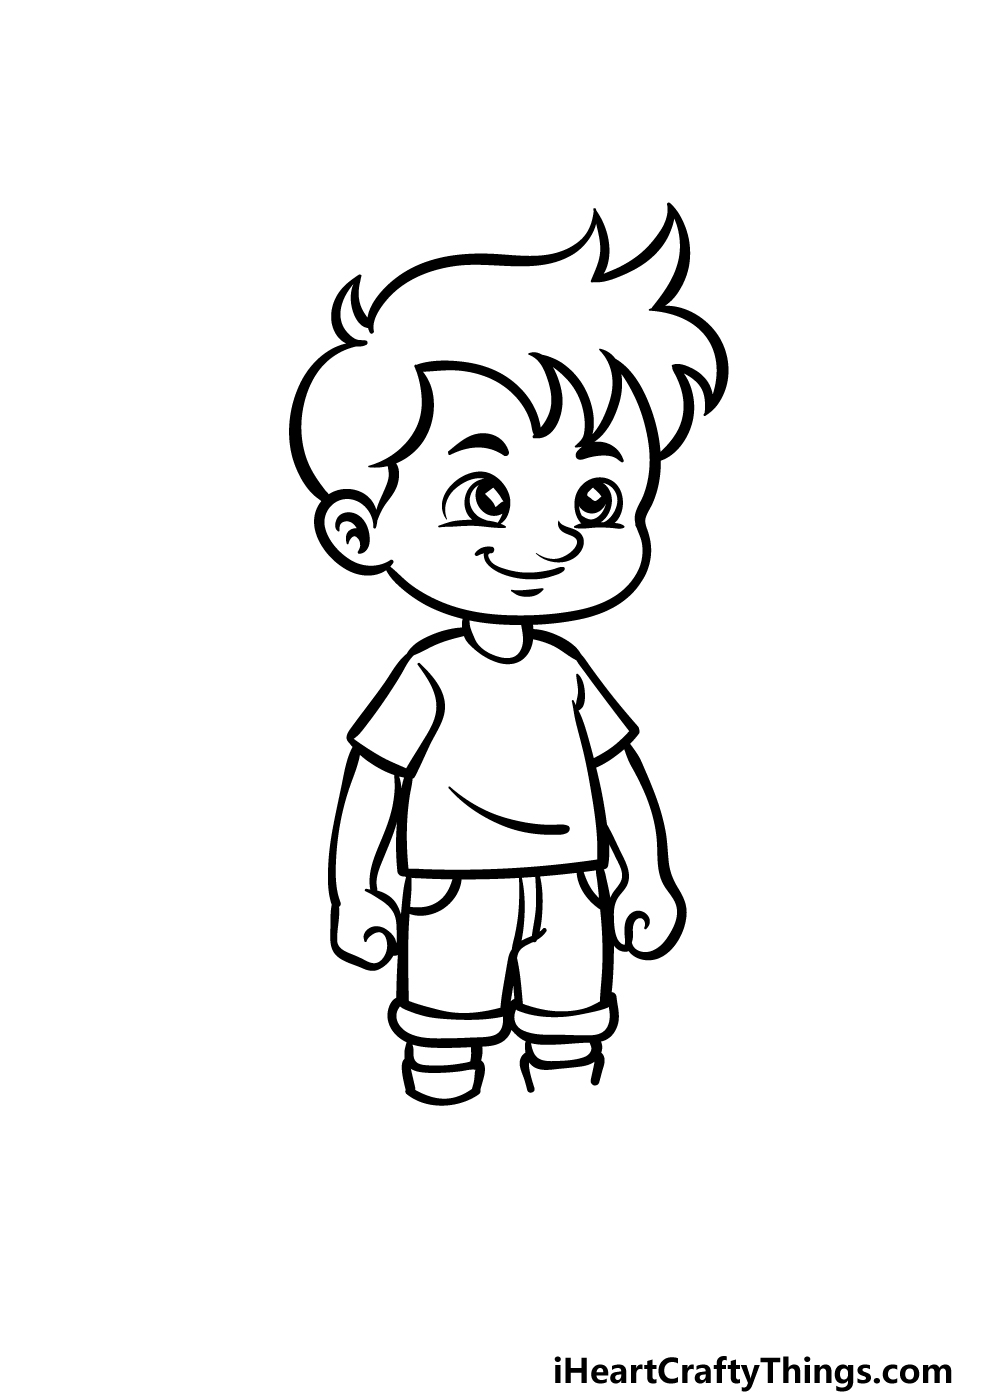 Cartoon Boy Drawing - How To Draw A Cartoon Boy Step By Step